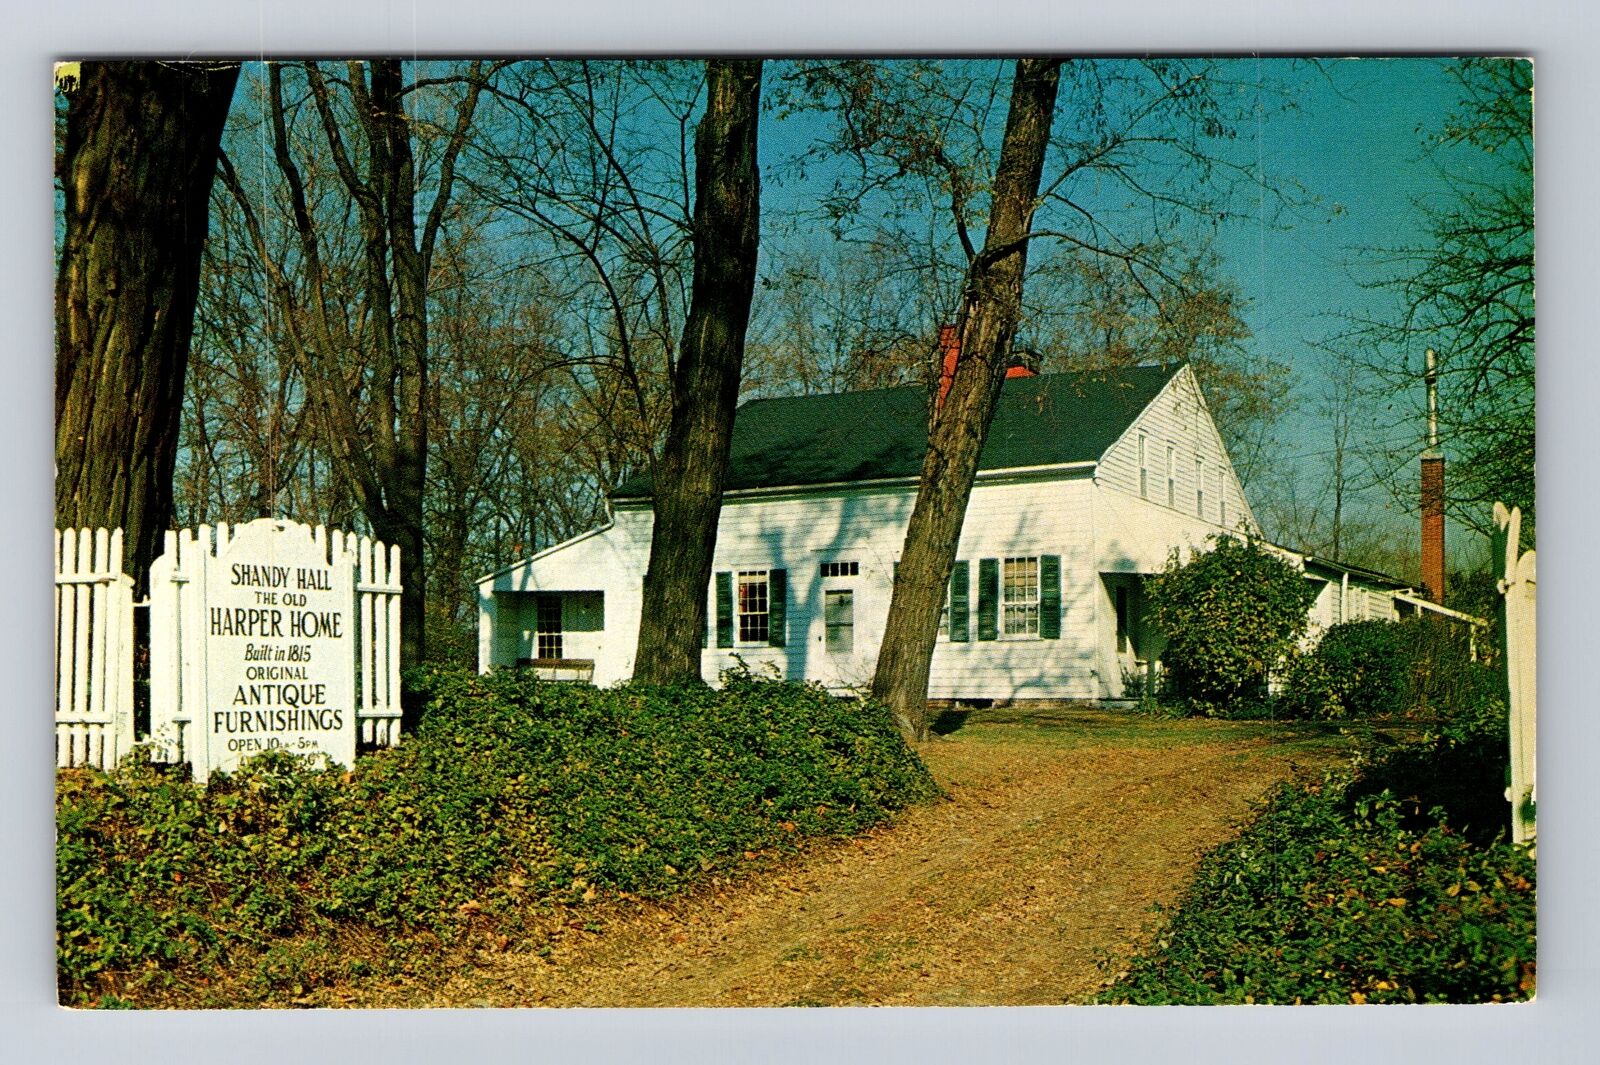 Unionville OH-Ohio, Historic 1815 Shandy Hall, 17 Room Museum, Vintage Postcard